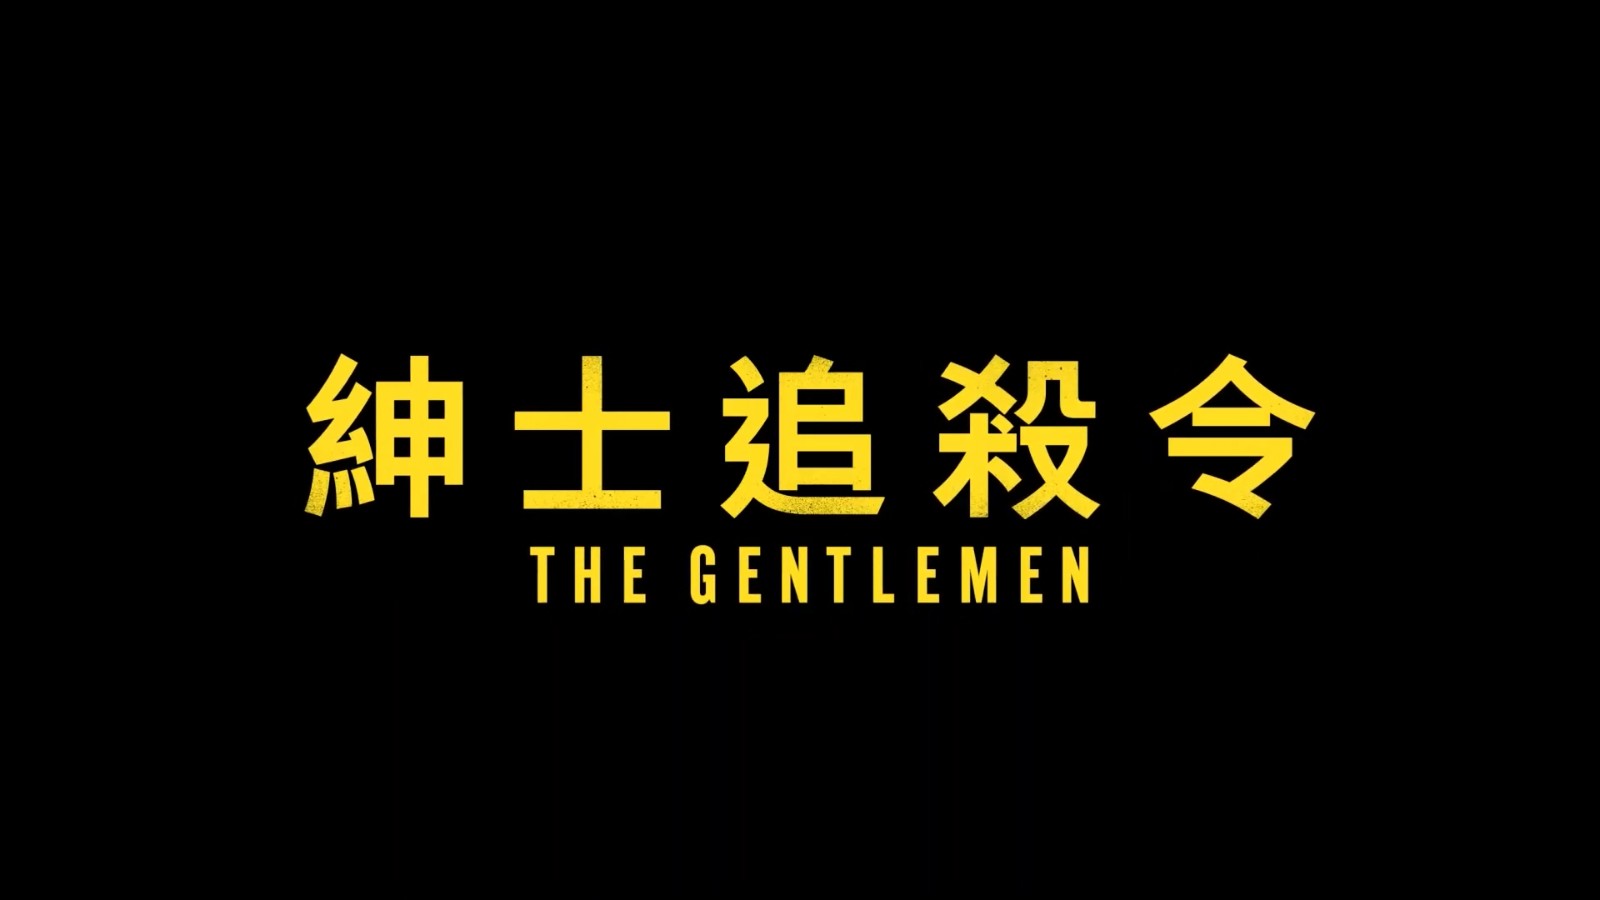 盖·里奇黑帮犯罪剧集《绅士们》正式预告 3月7日播出